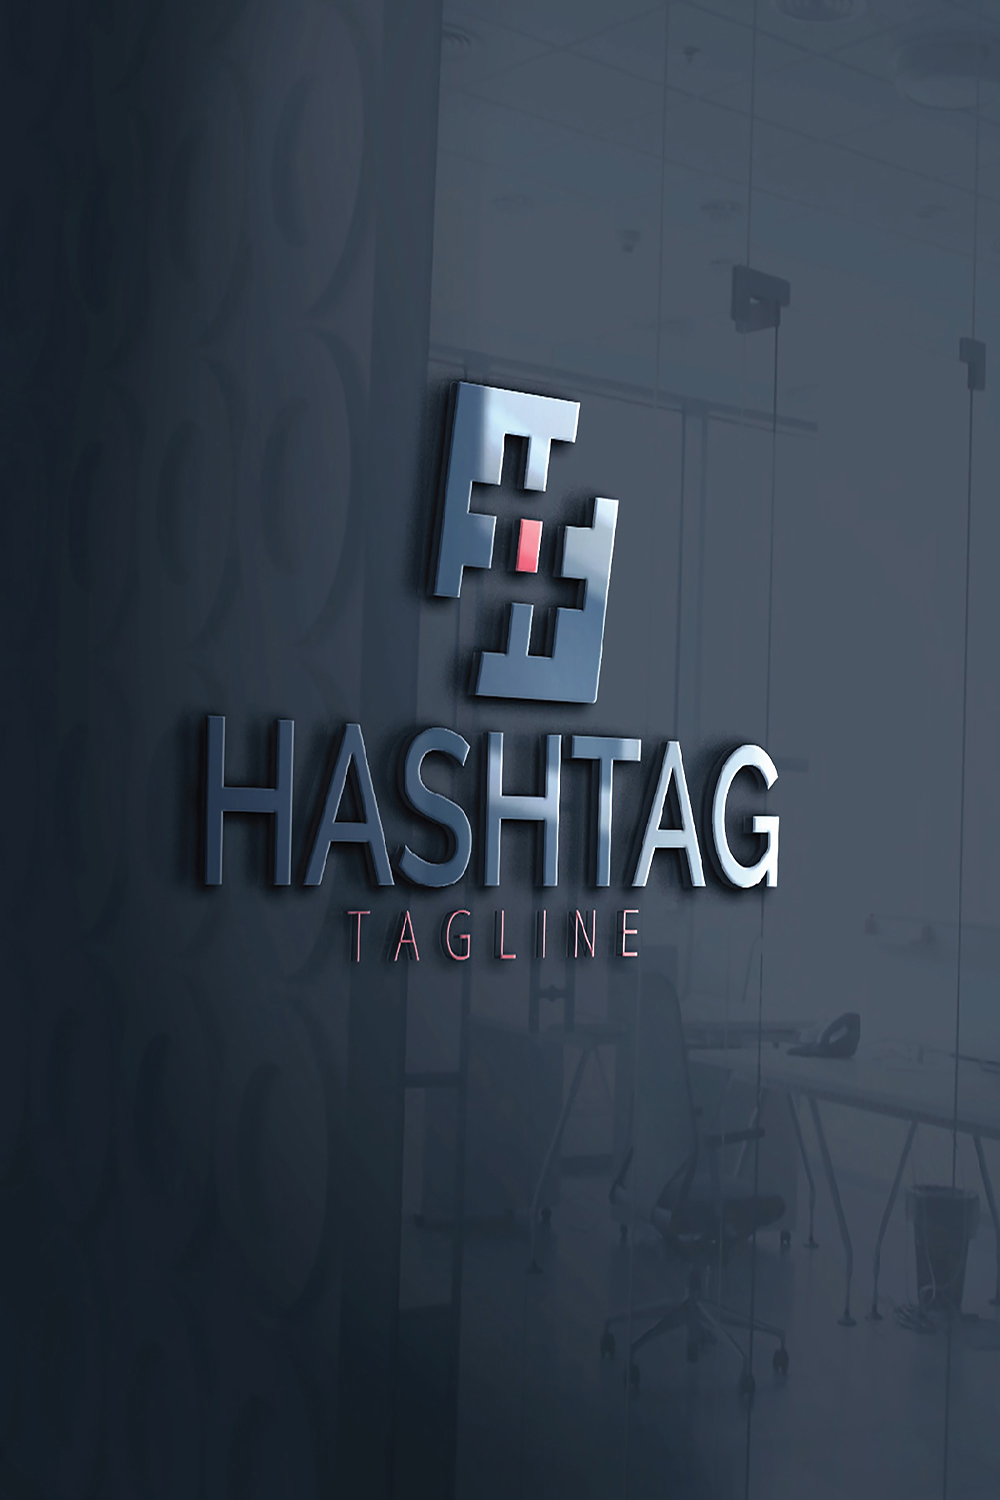 Stylish Business Hashtag Logo Design pinterest image.